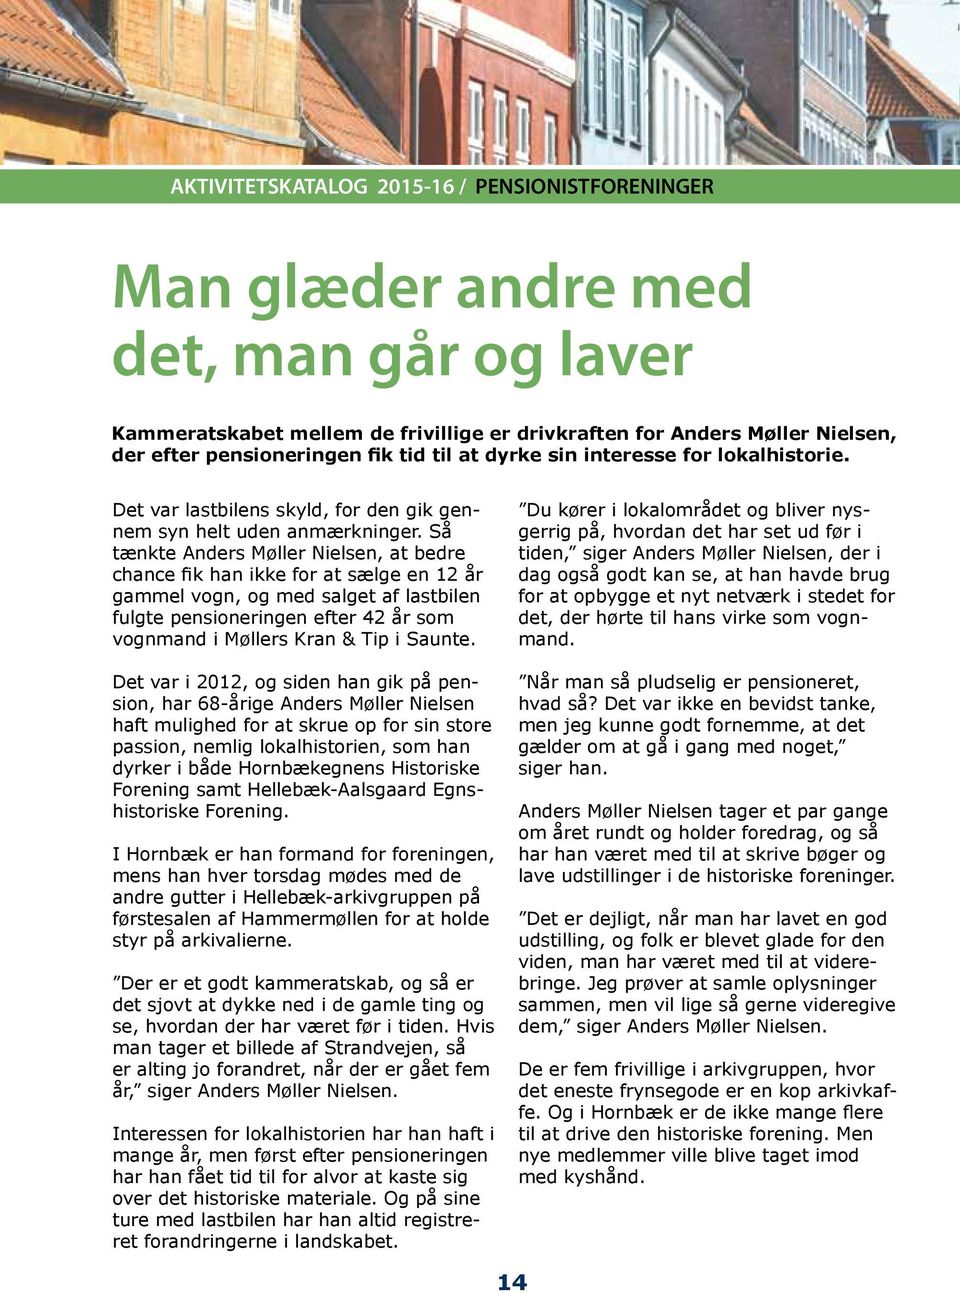 Så tænkte Anders Møller Nielsen, at bedre chance fik han ikke for at sælge en 12 år gammel vogn, og med salget af lastbilen fulgte pensioneringen efter 42 år som vognmand i Møllers Kran & Tip i